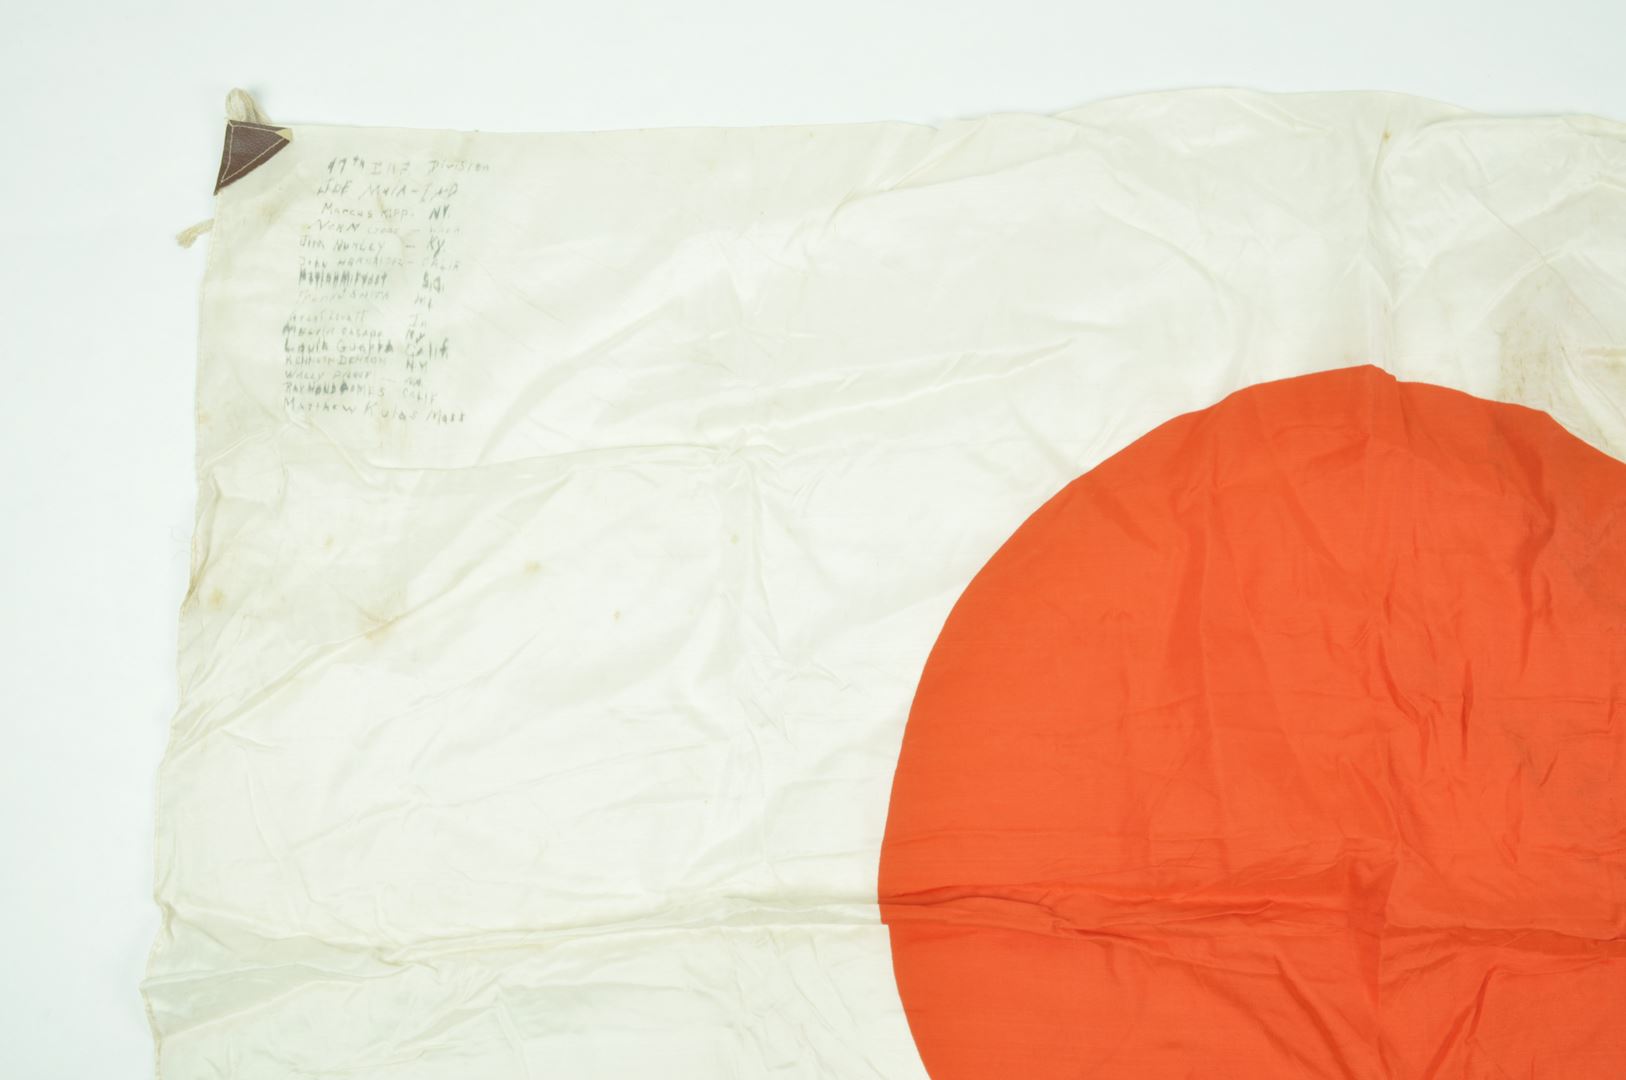 Drapeau Japonais signé par des soldats de la 97th Infantry Division